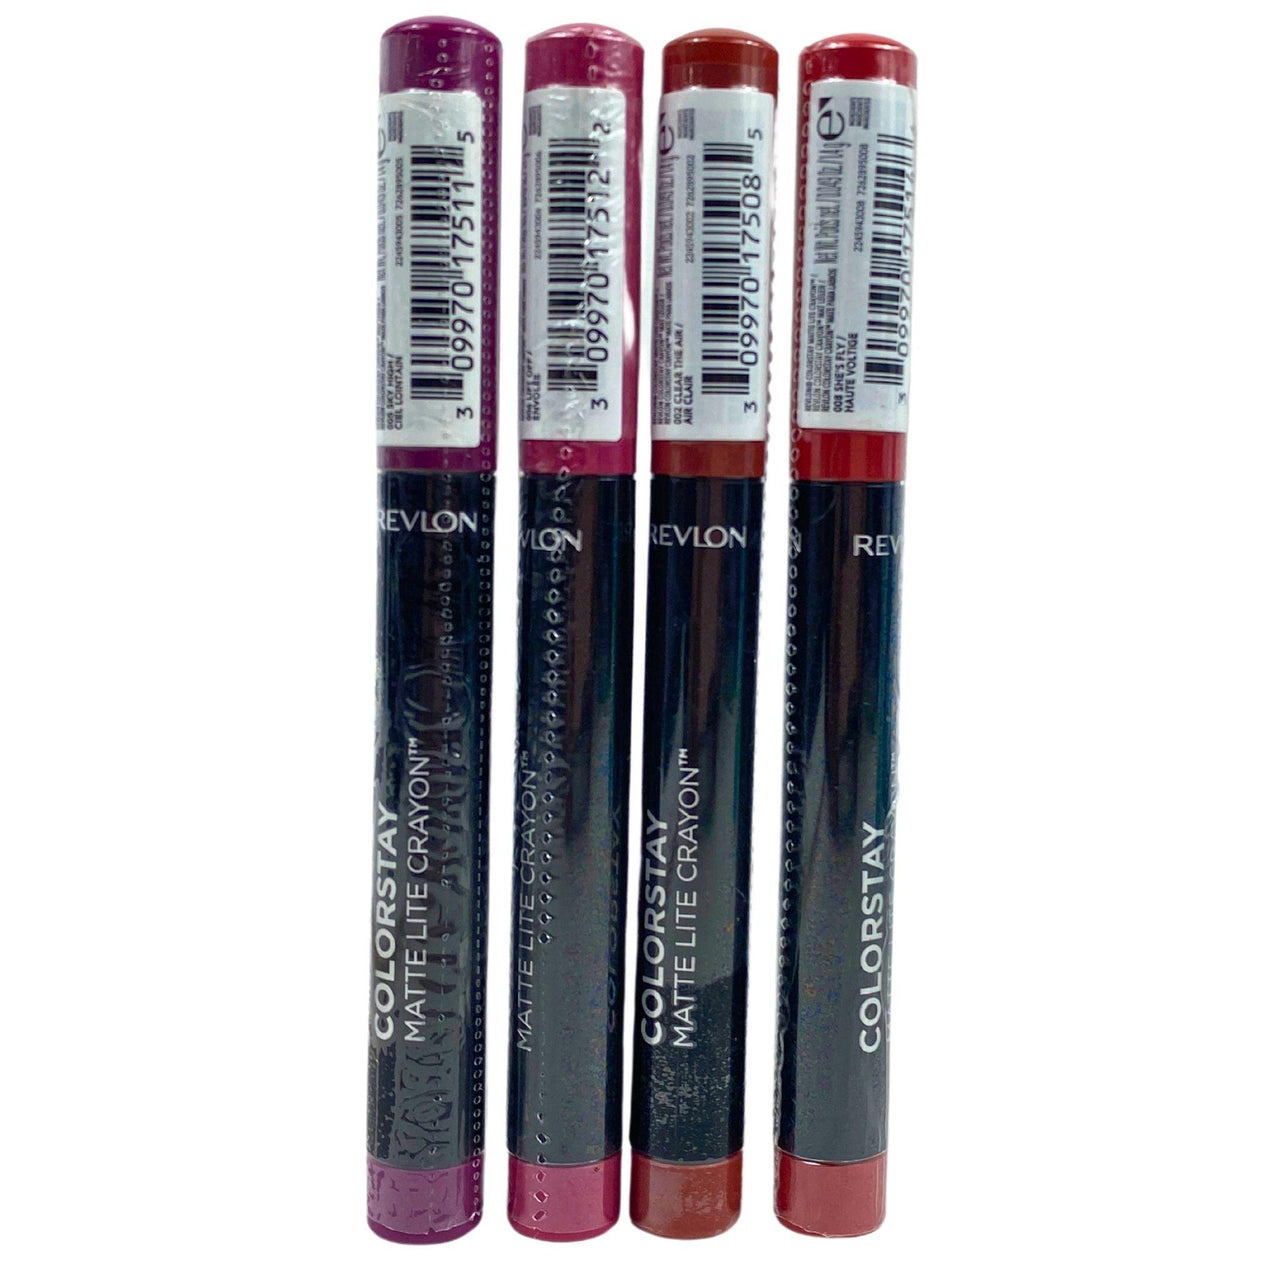 Revlon Colorstay Matte Lip Crayon Assorted Mix (50 Pcs Lot) - Discount Wholesalers Inc